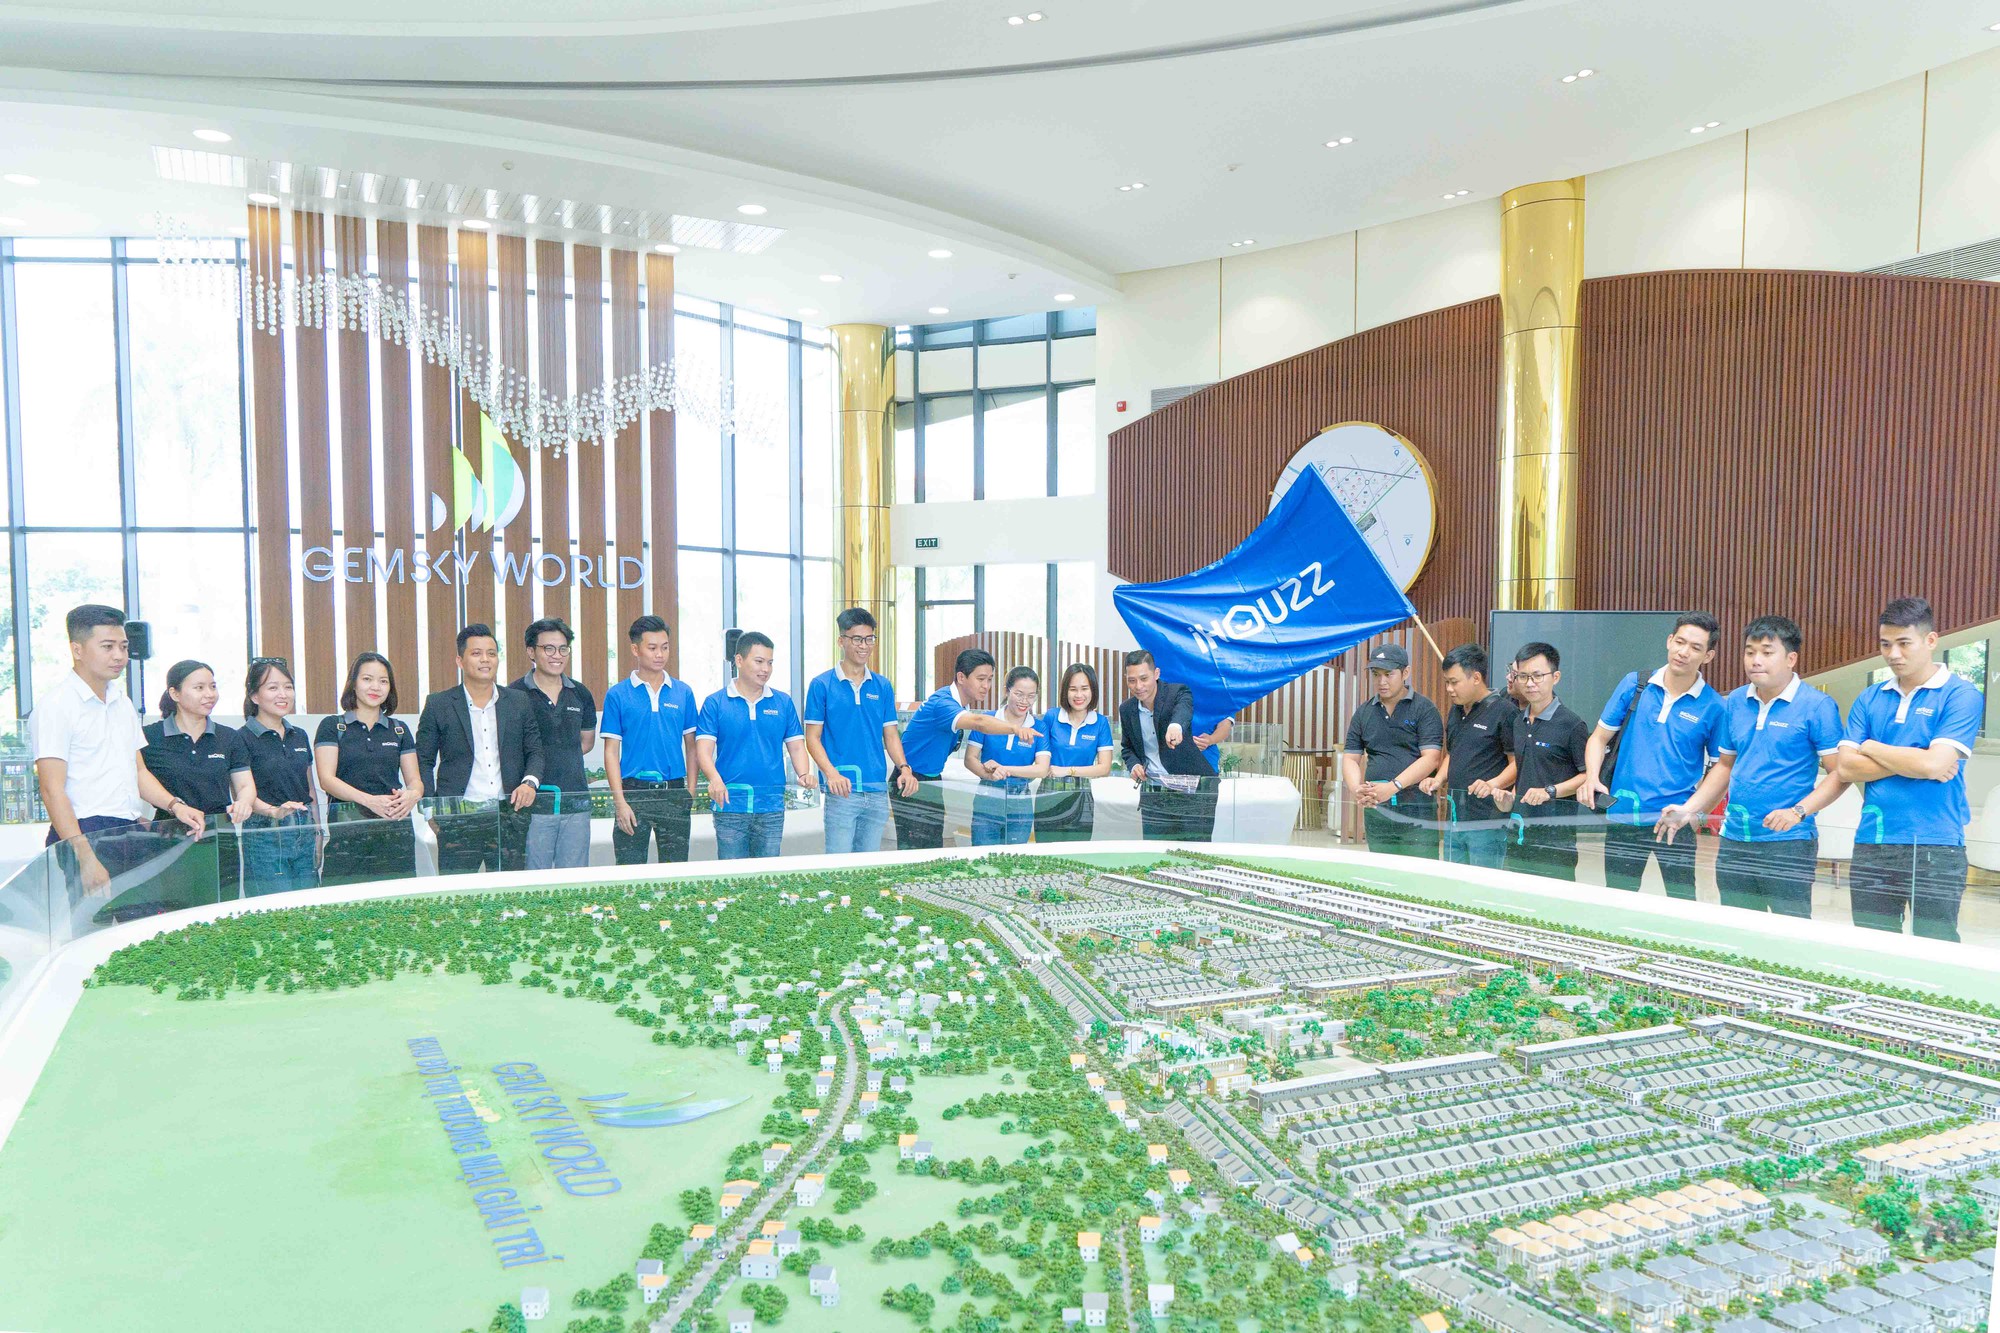 iHouzz khai trương văn phòng đón đầu tiềm năng từ sân bay Long Thành - Ảnh 1.